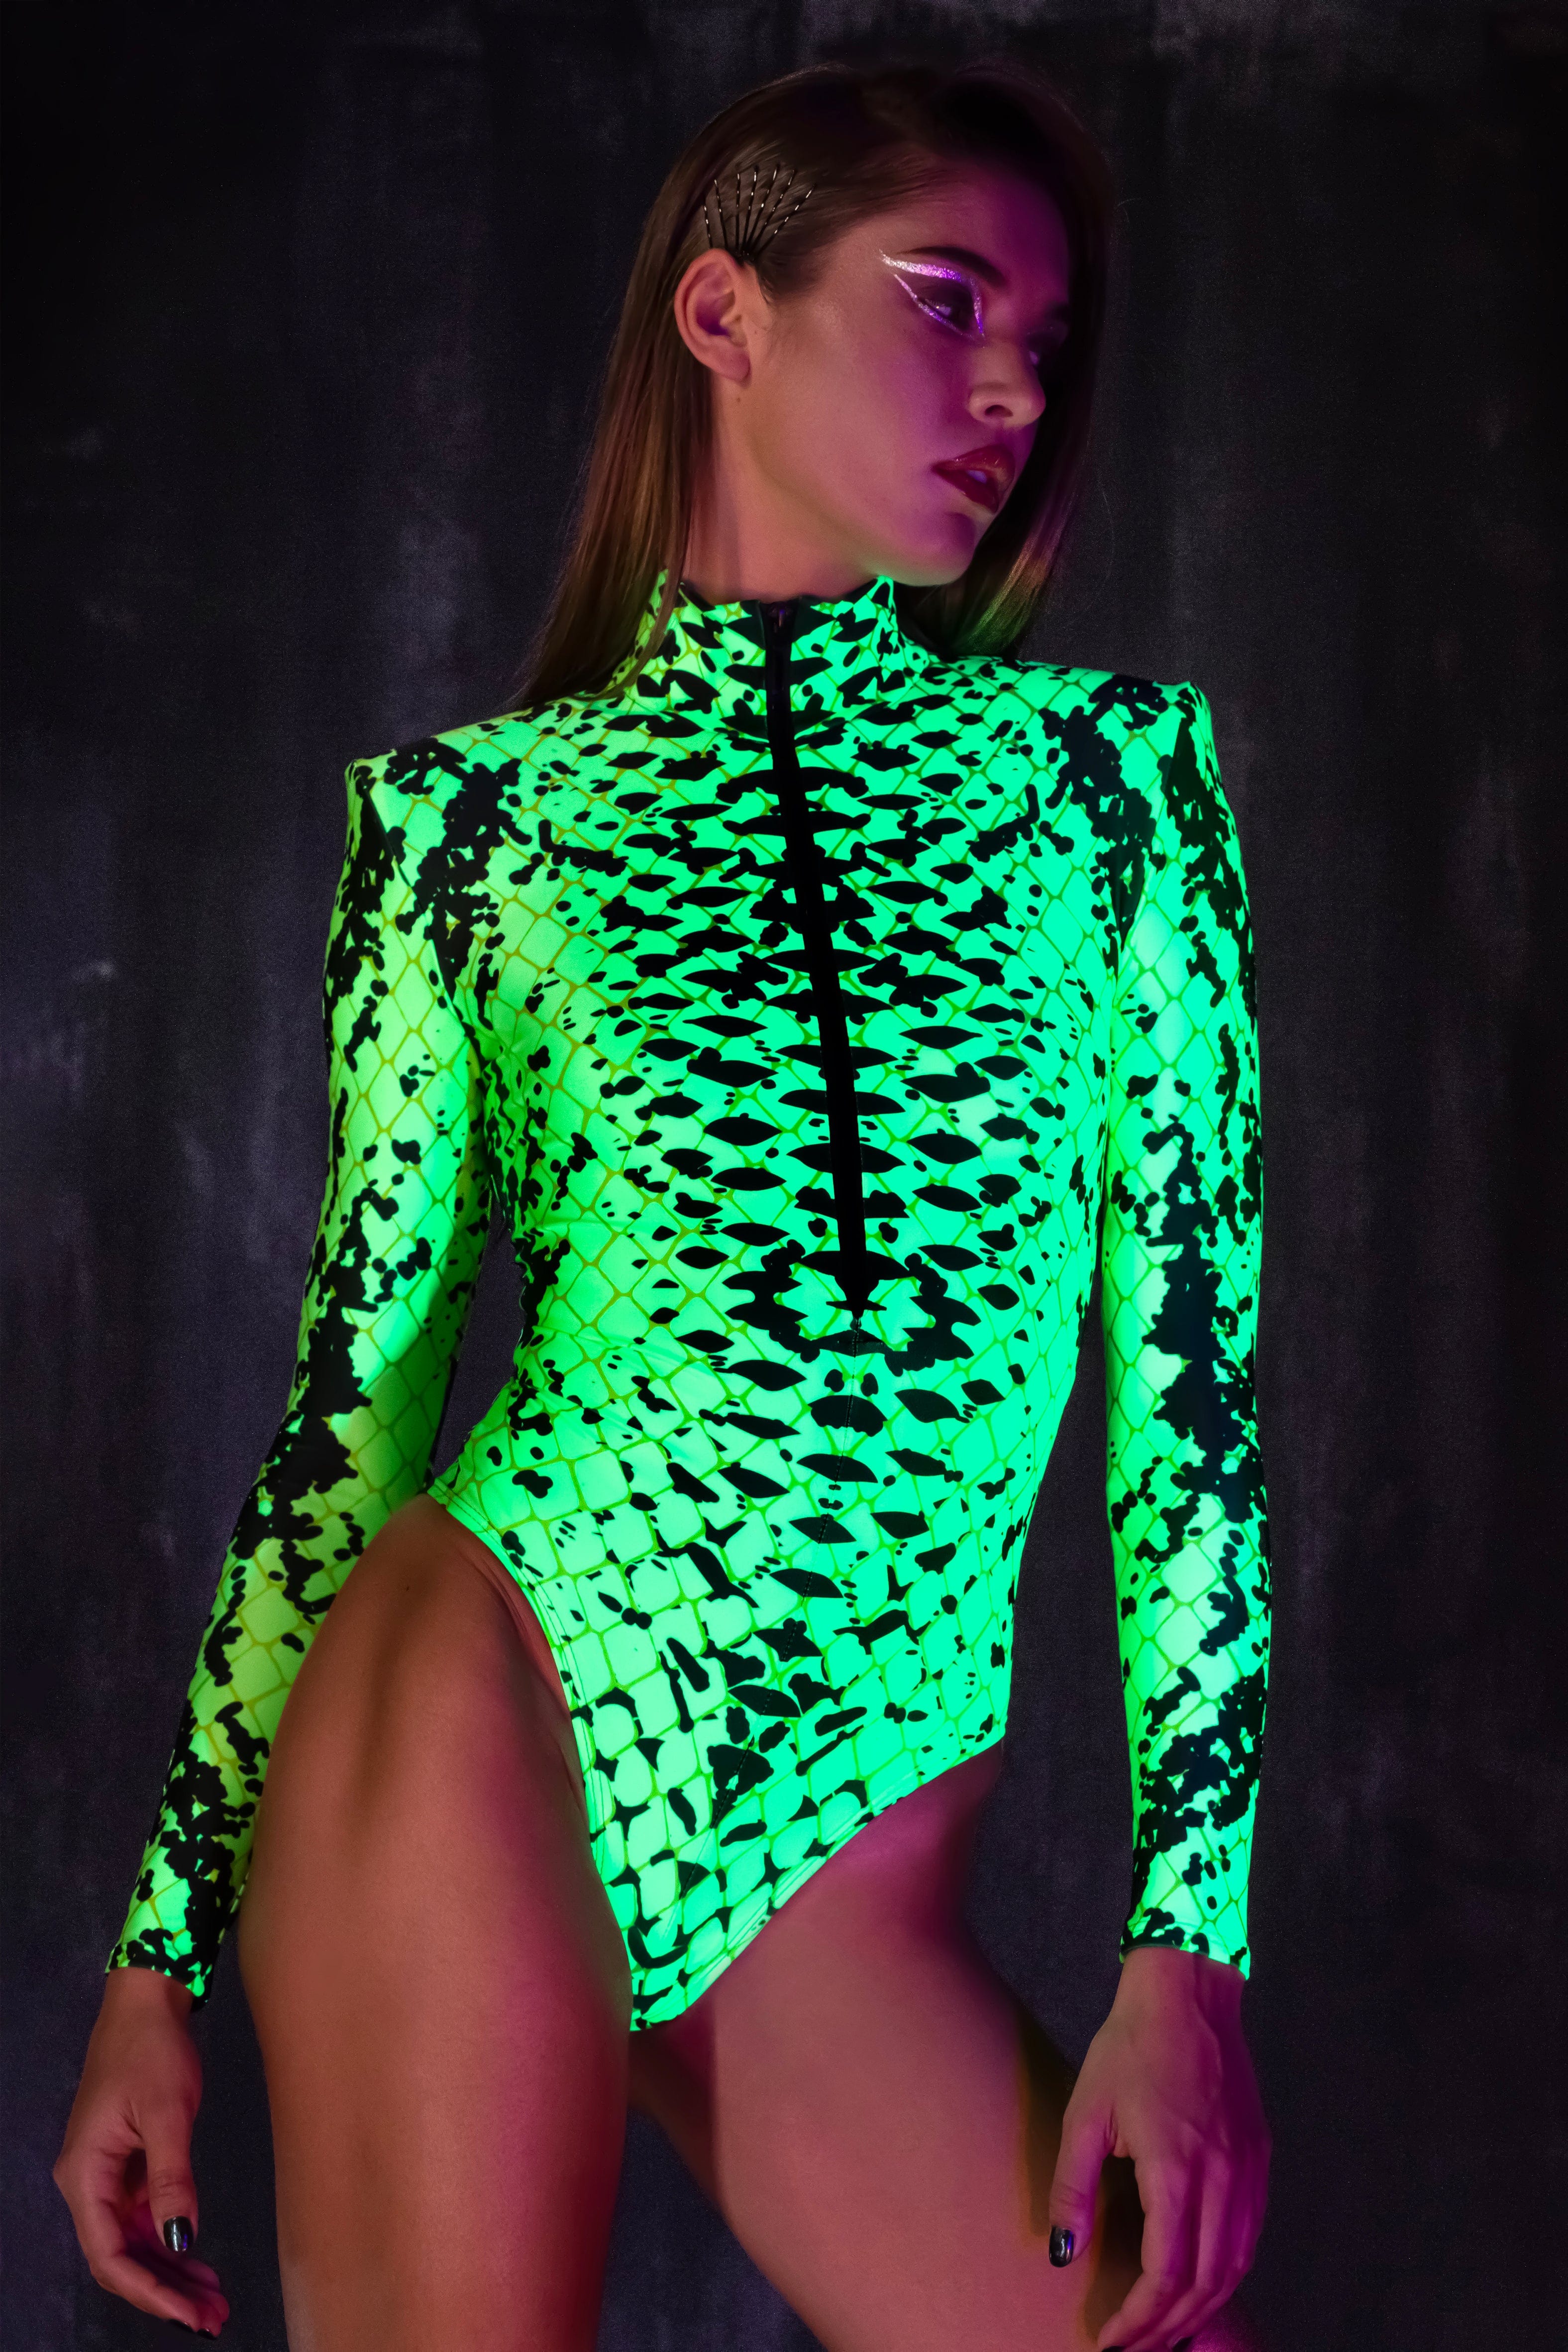 UV Reptile Serious Bodysuit